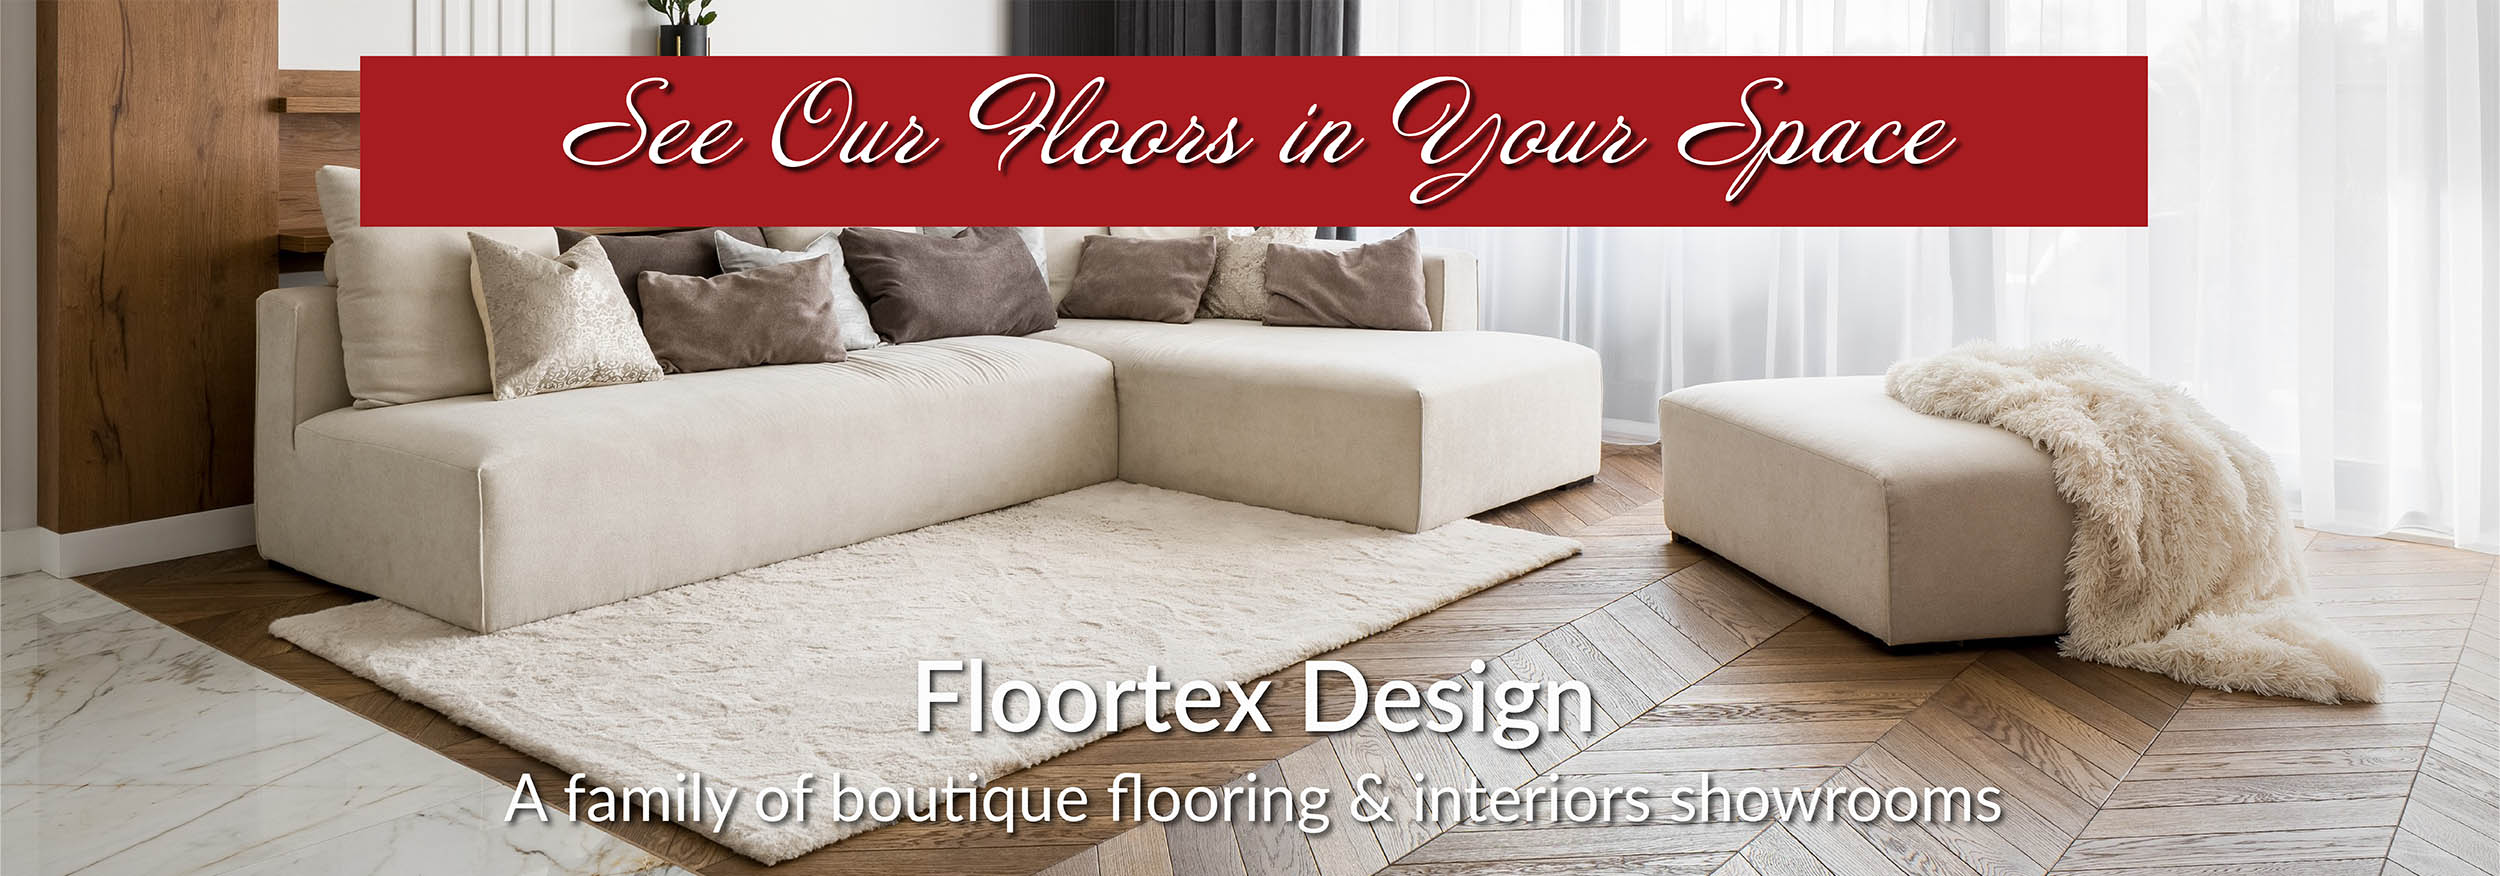 Roomvo-Floortex Design